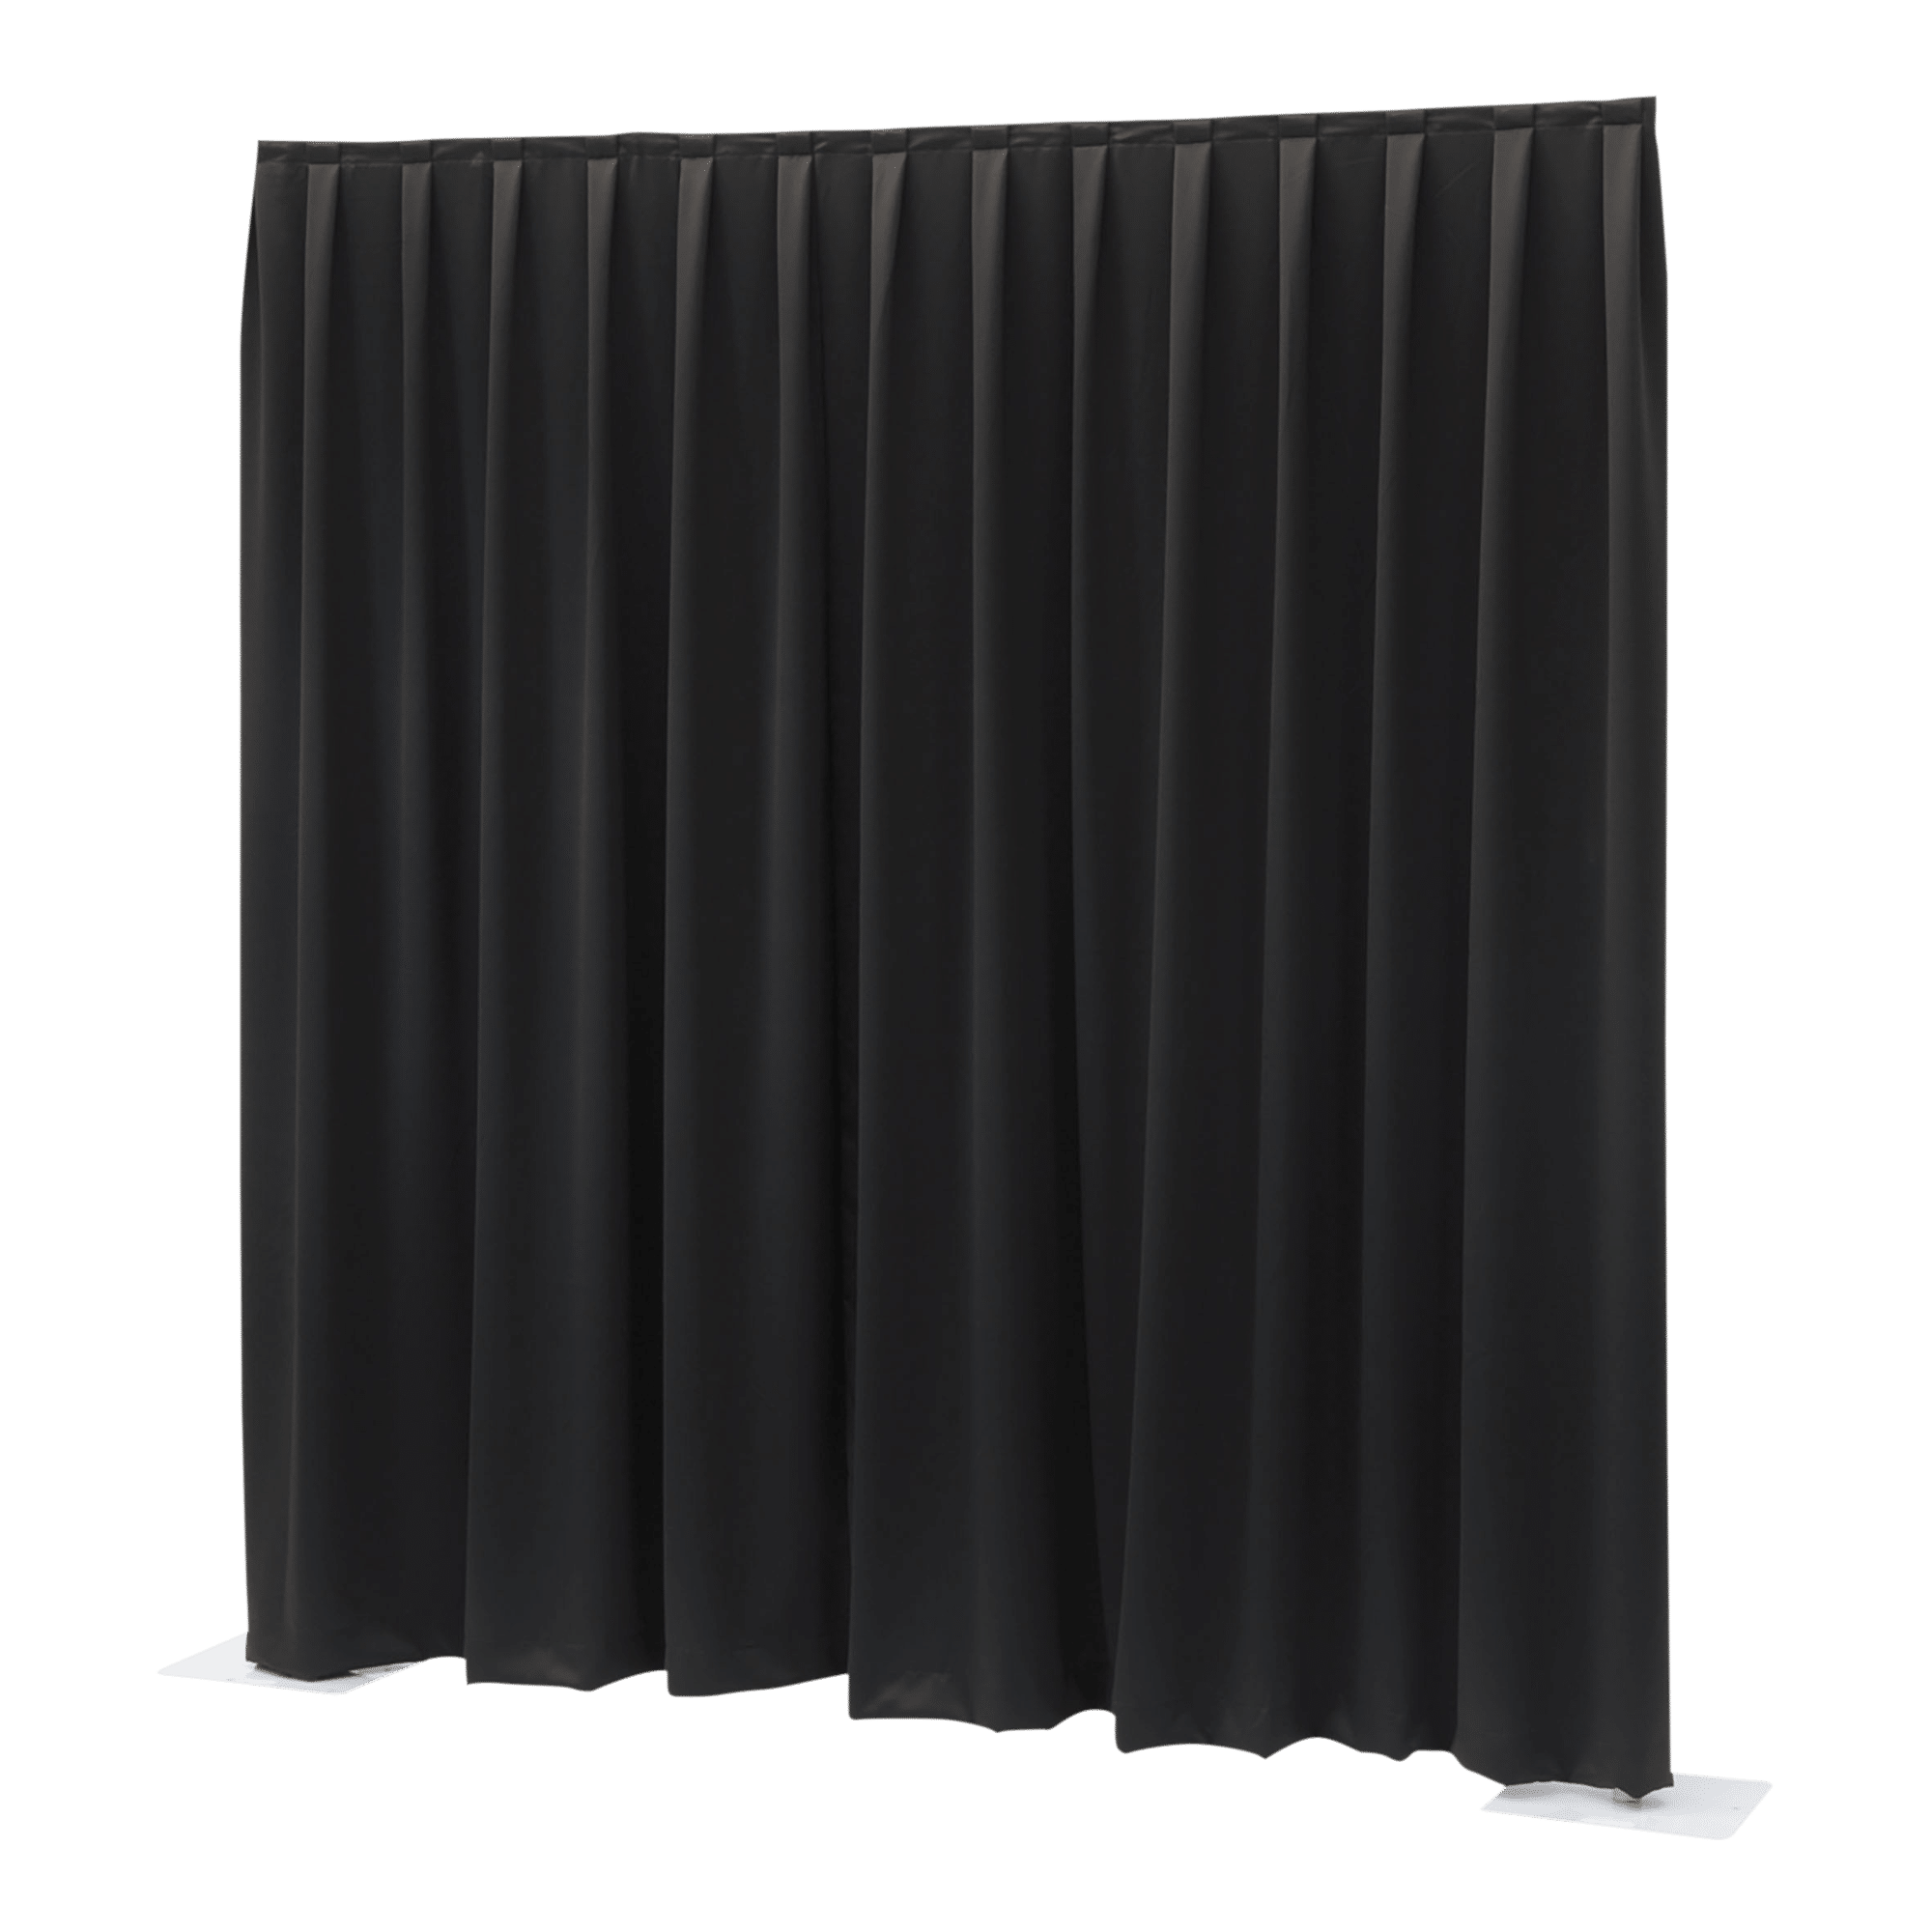 P&D Curtain Molton 300 g/m² - Onlinediscowinkel.nl